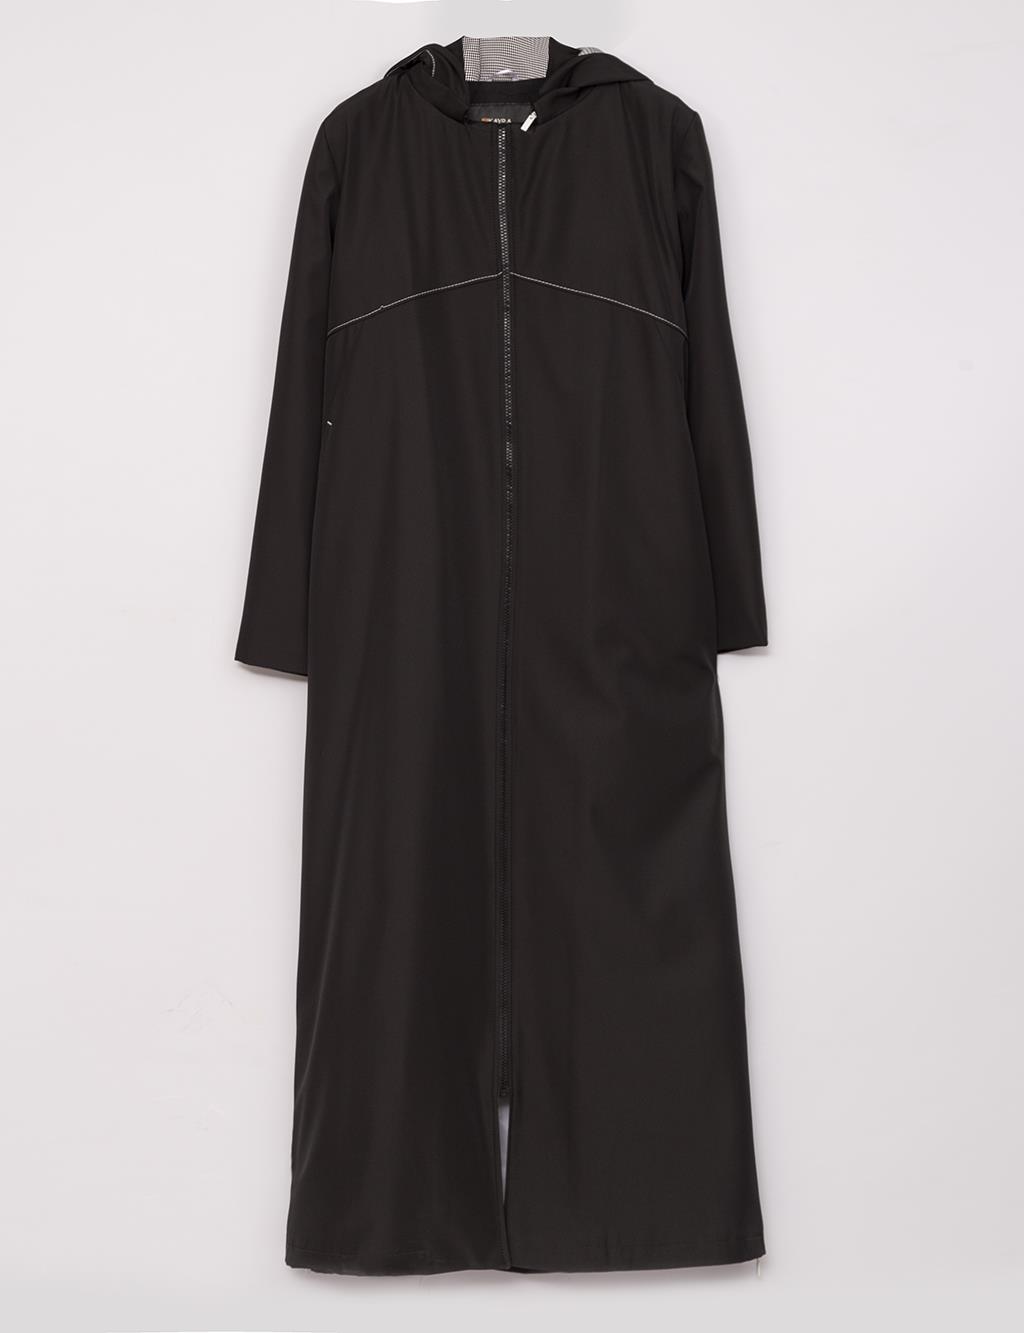 Windbreaker Detailed Hooded Topcoat Black